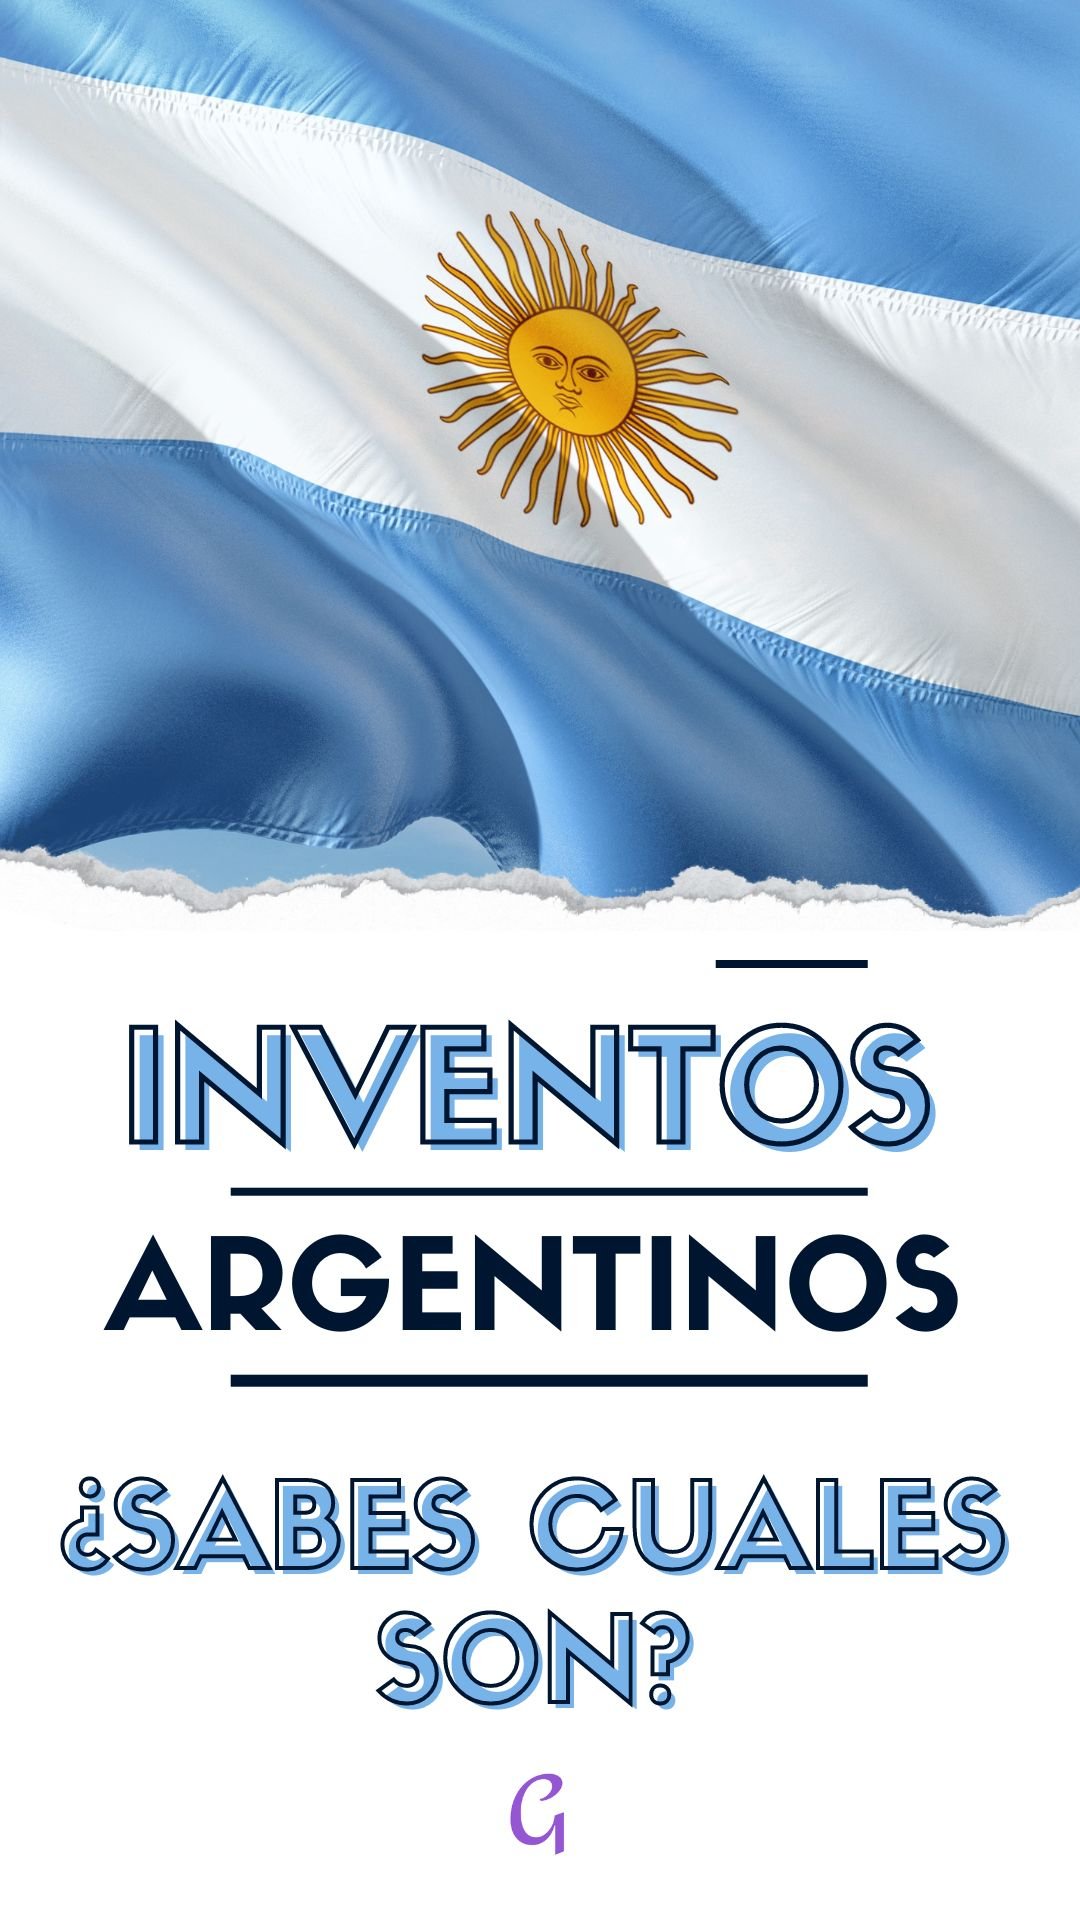 Inventos Argentinos y otros datos interesantes ¿Los conoces?